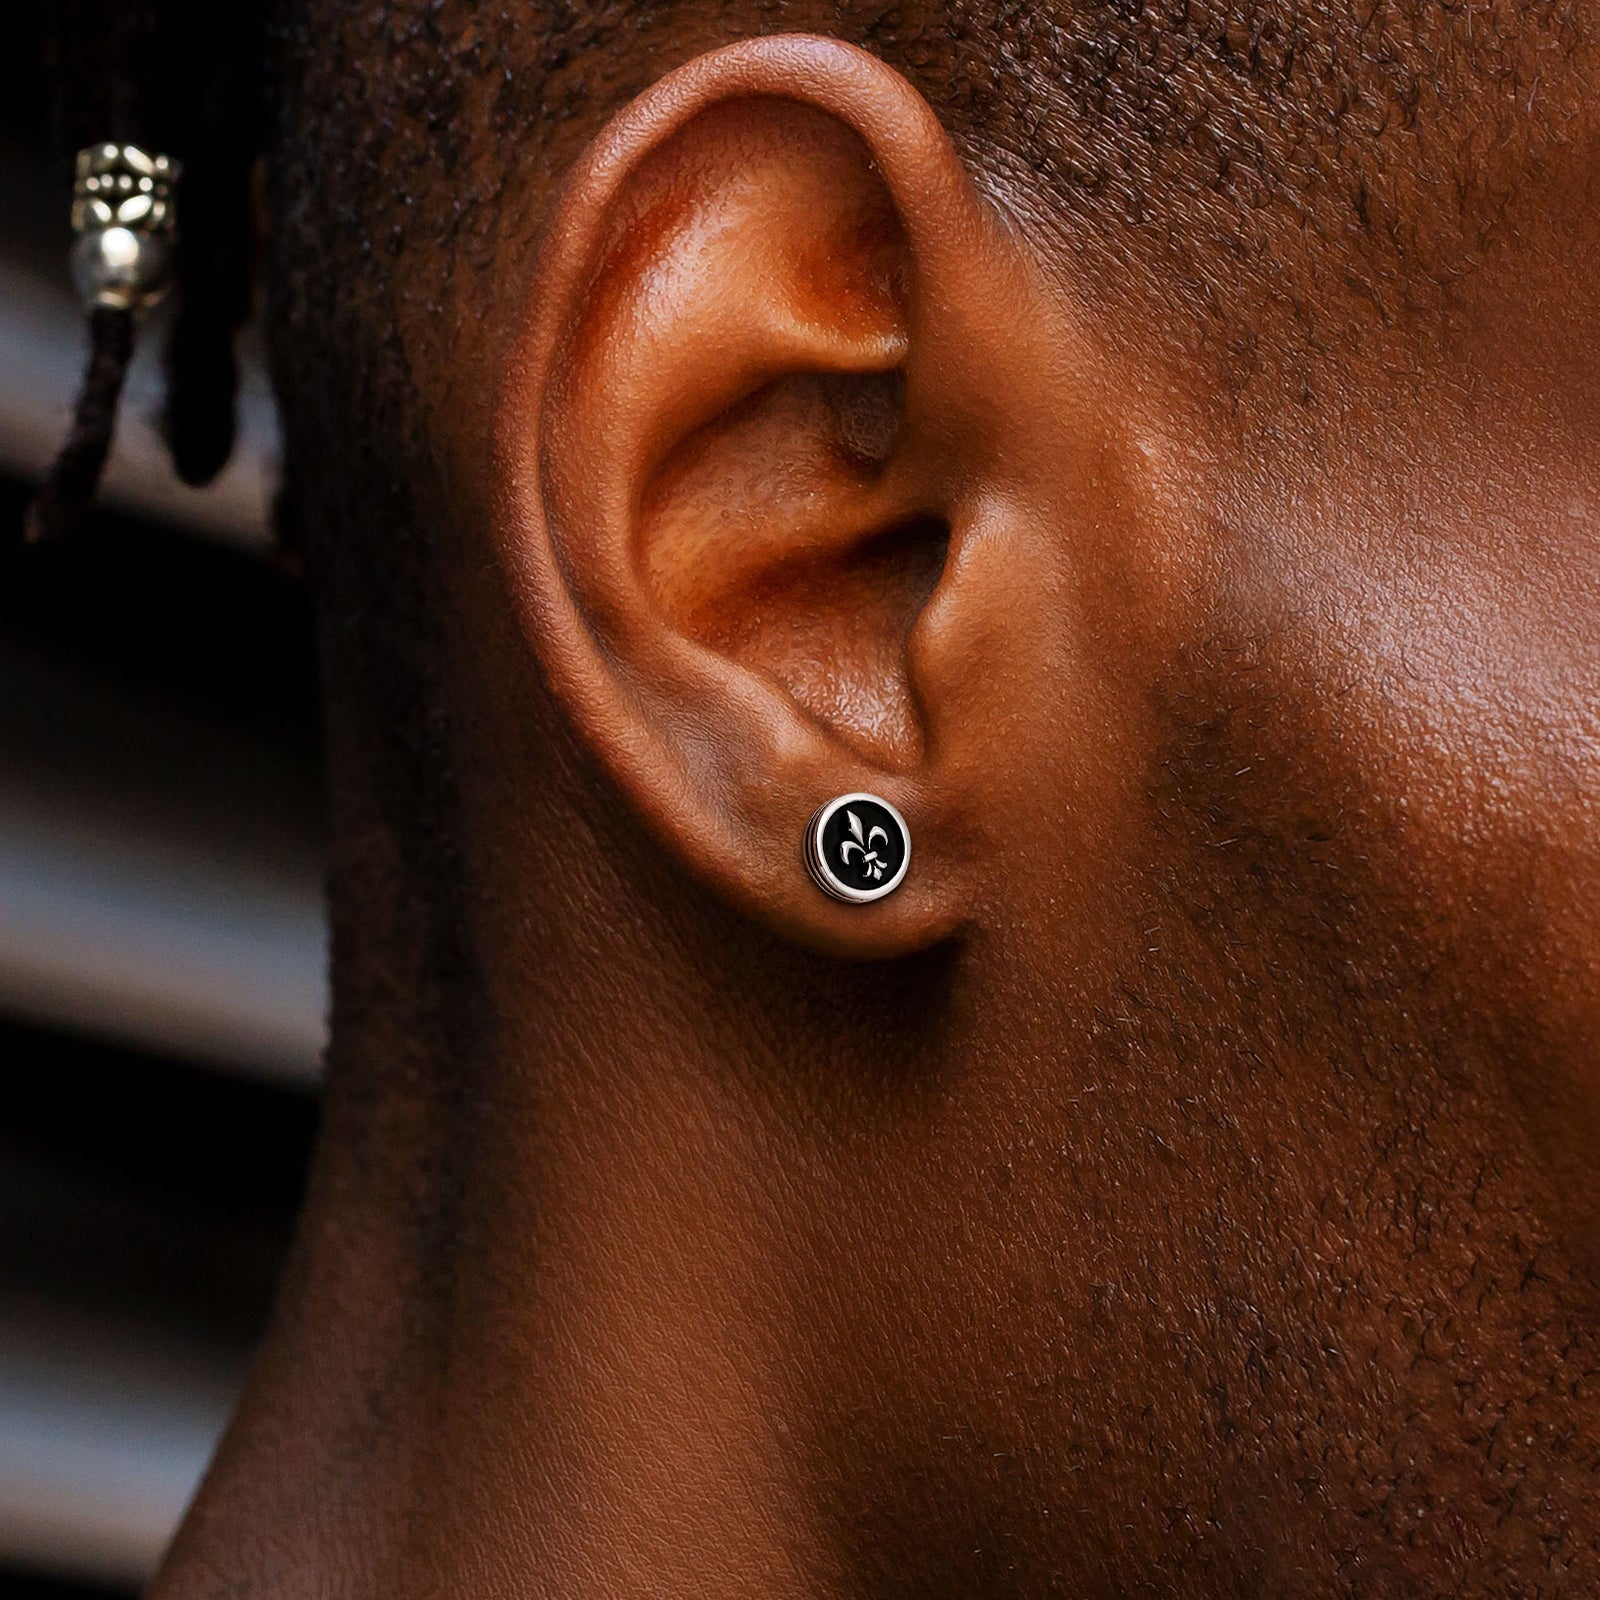 Wholesale Men's Earrings Stud Earrings 9mm Fleur de lis Black Earrings for Men